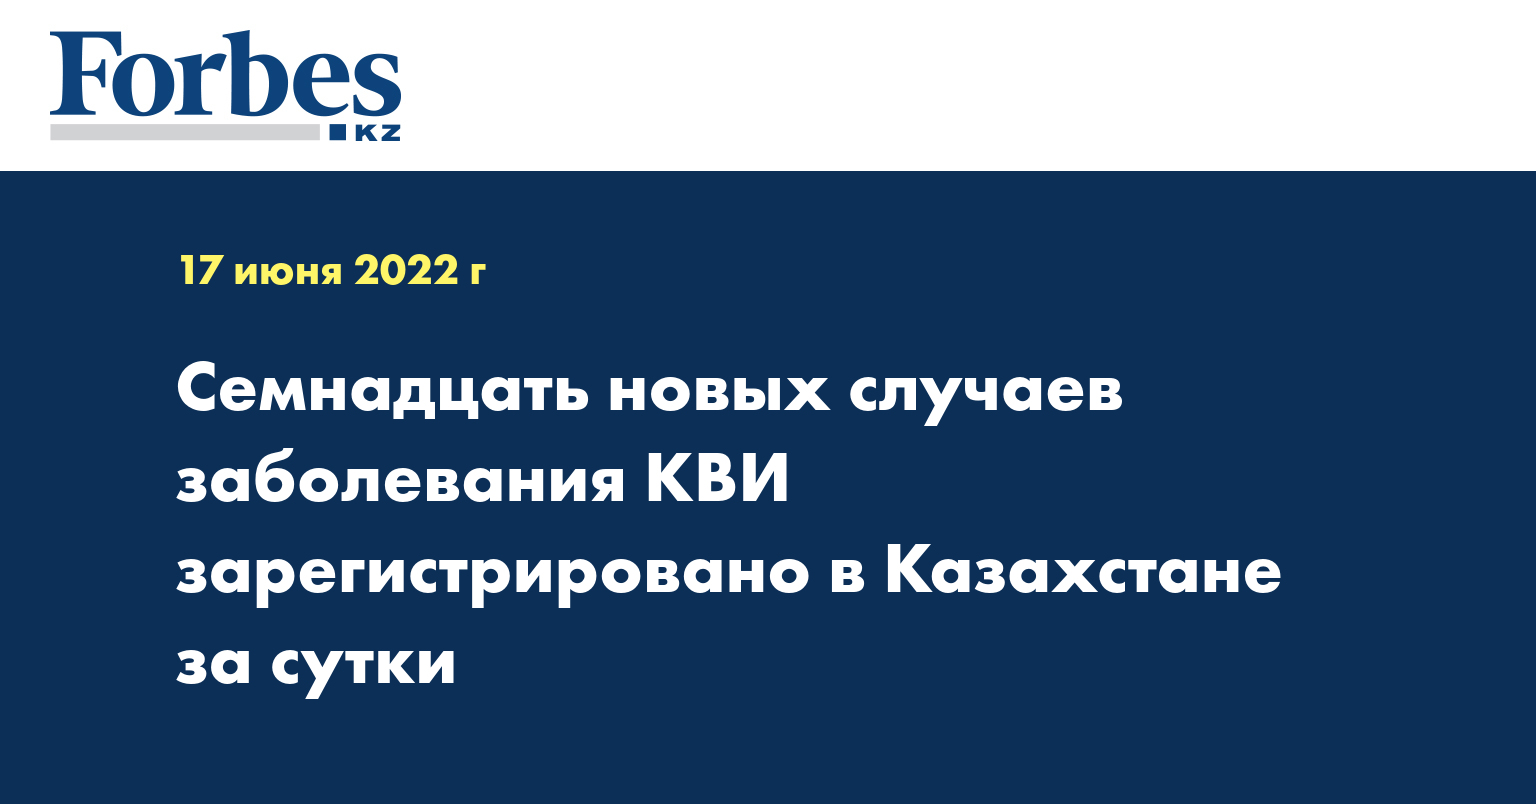 Семнадцать новых случаев заболевания КВИ зарегистрировано в Казахстане за сутки